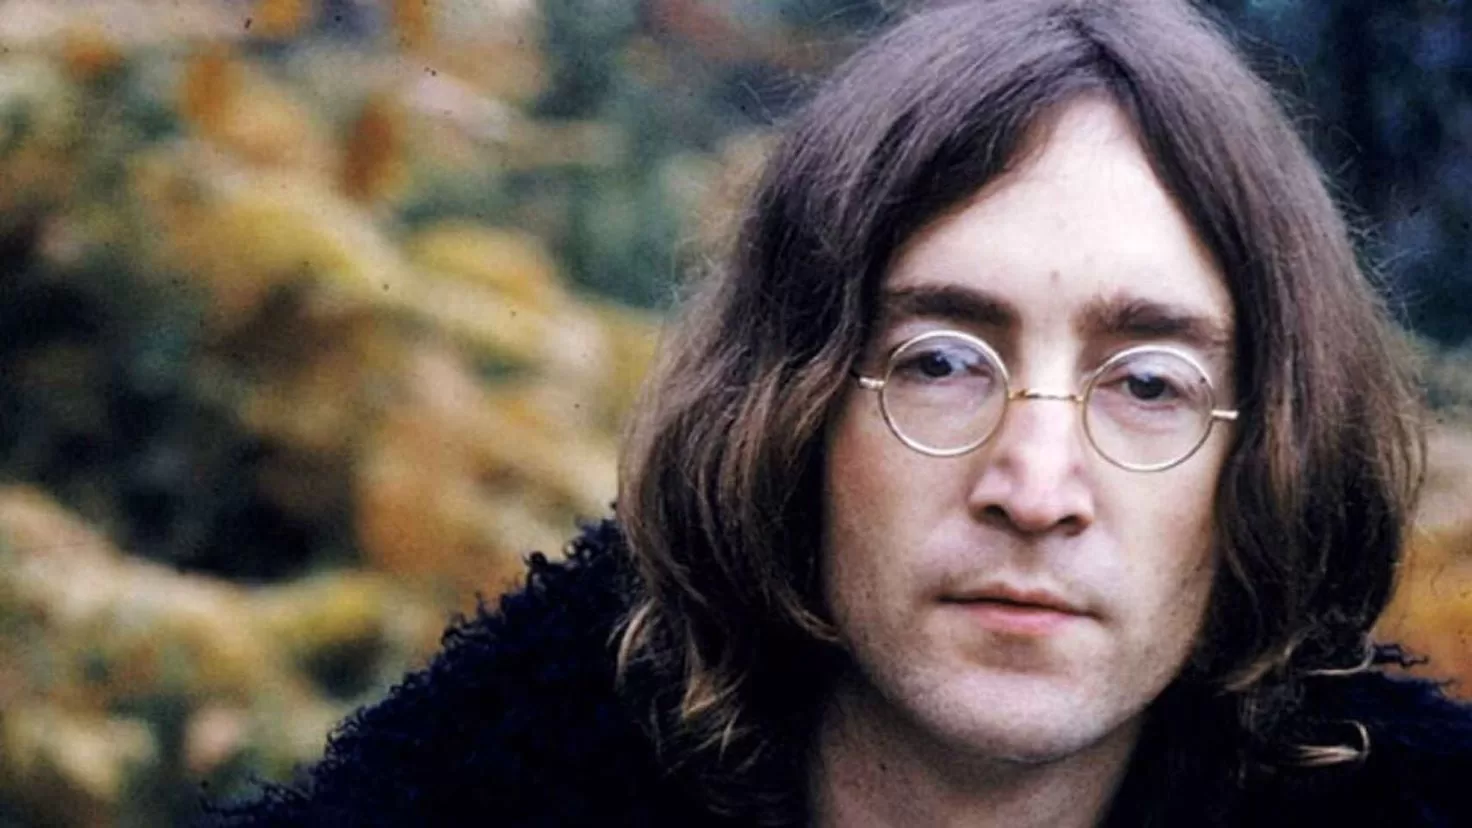 John Lennon's last words come to light
